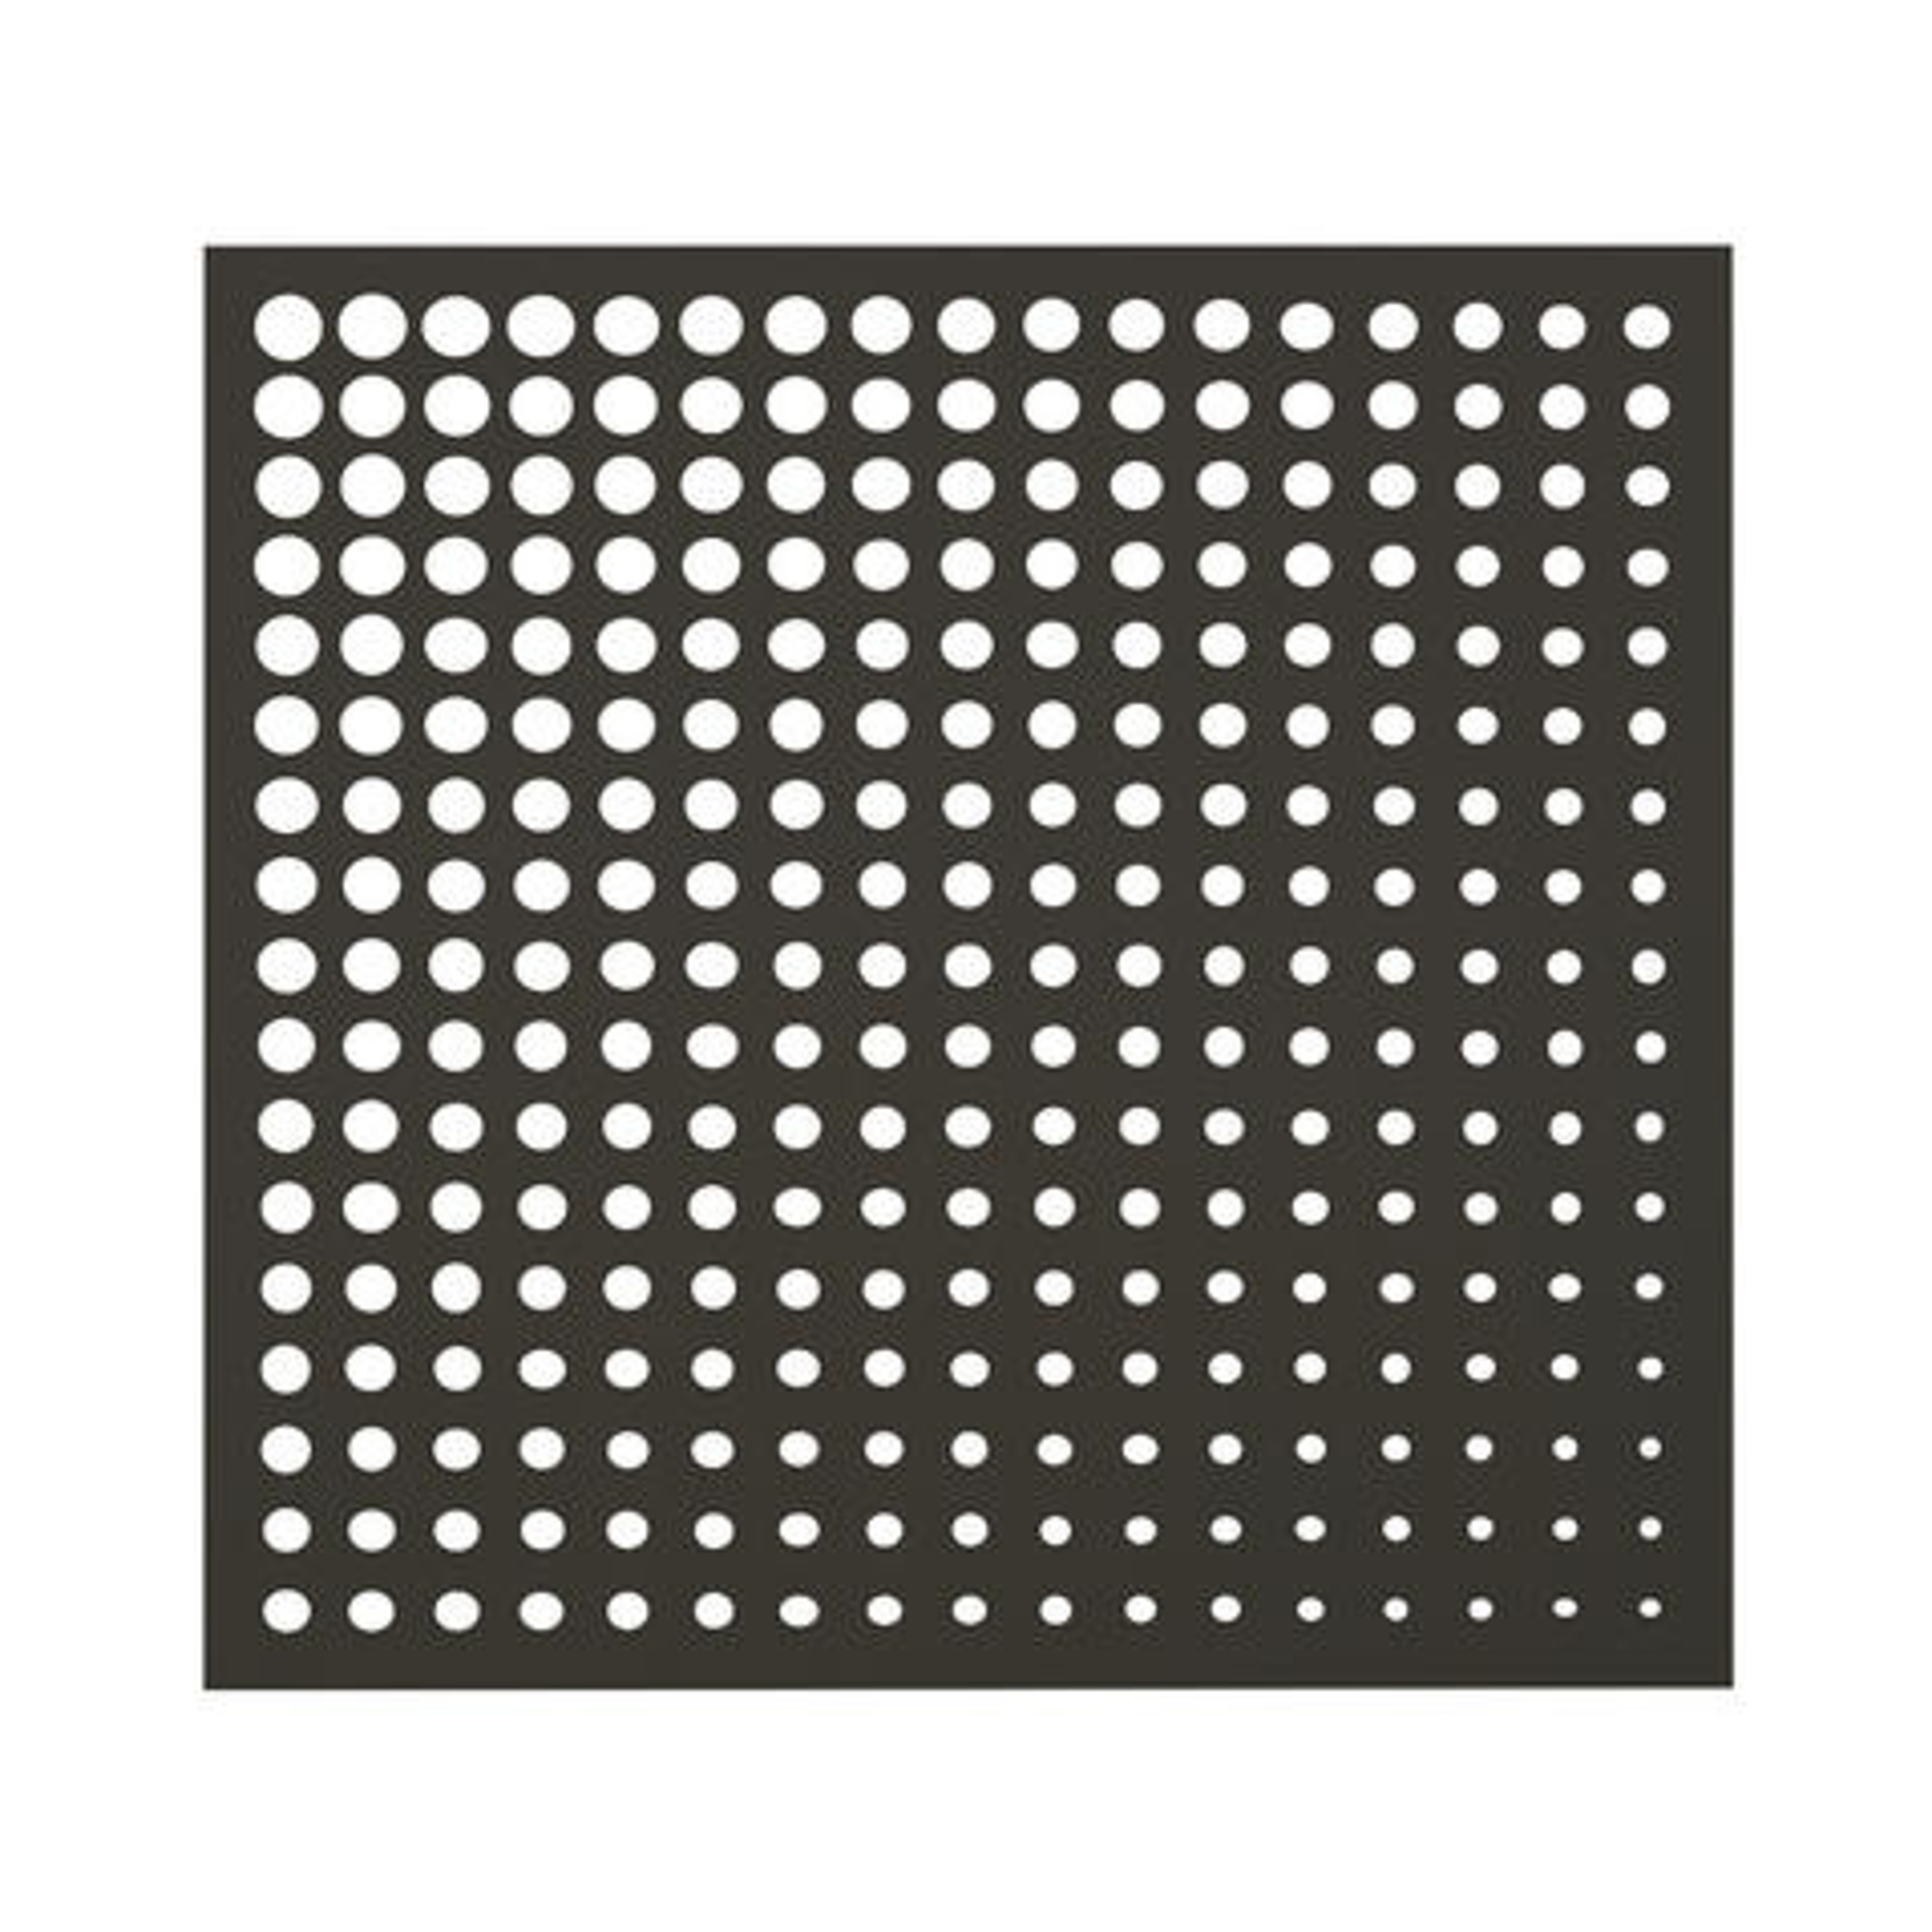 Nortene MOON PANEL dekoratív panel, kör mintázattal - 1 x 1 m - antracit 2019490